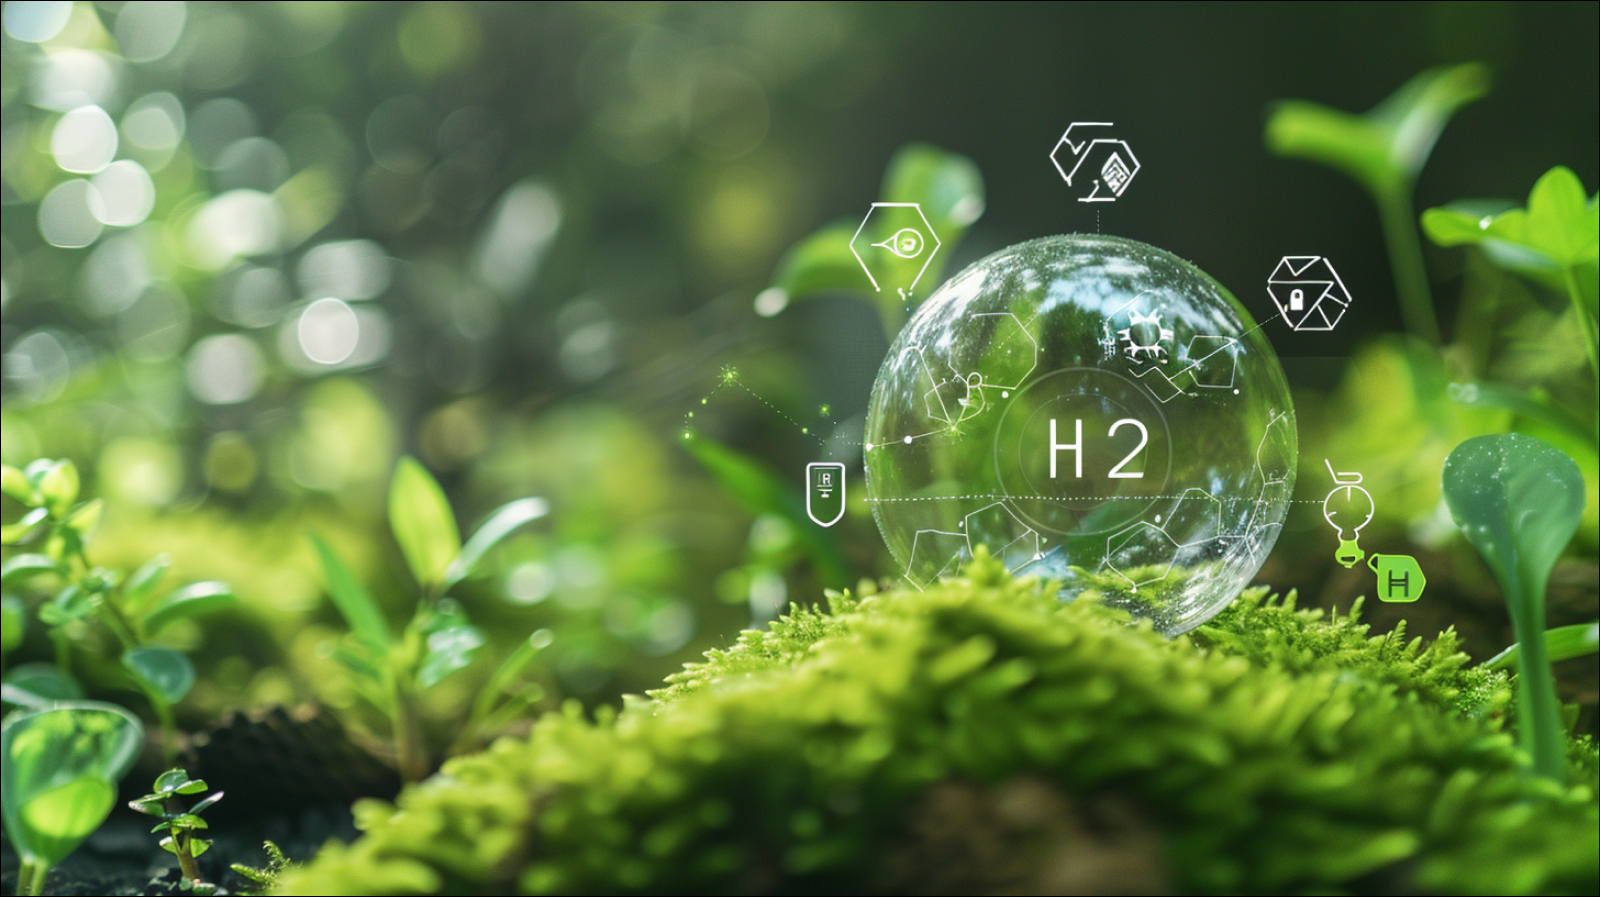 Wasserstoffenergie, mit einer transparenten Blase mit der Aufschrift H2 über einer moosigen Oberfläche, umgeben von Symbolen, in einer grünen Umgebung